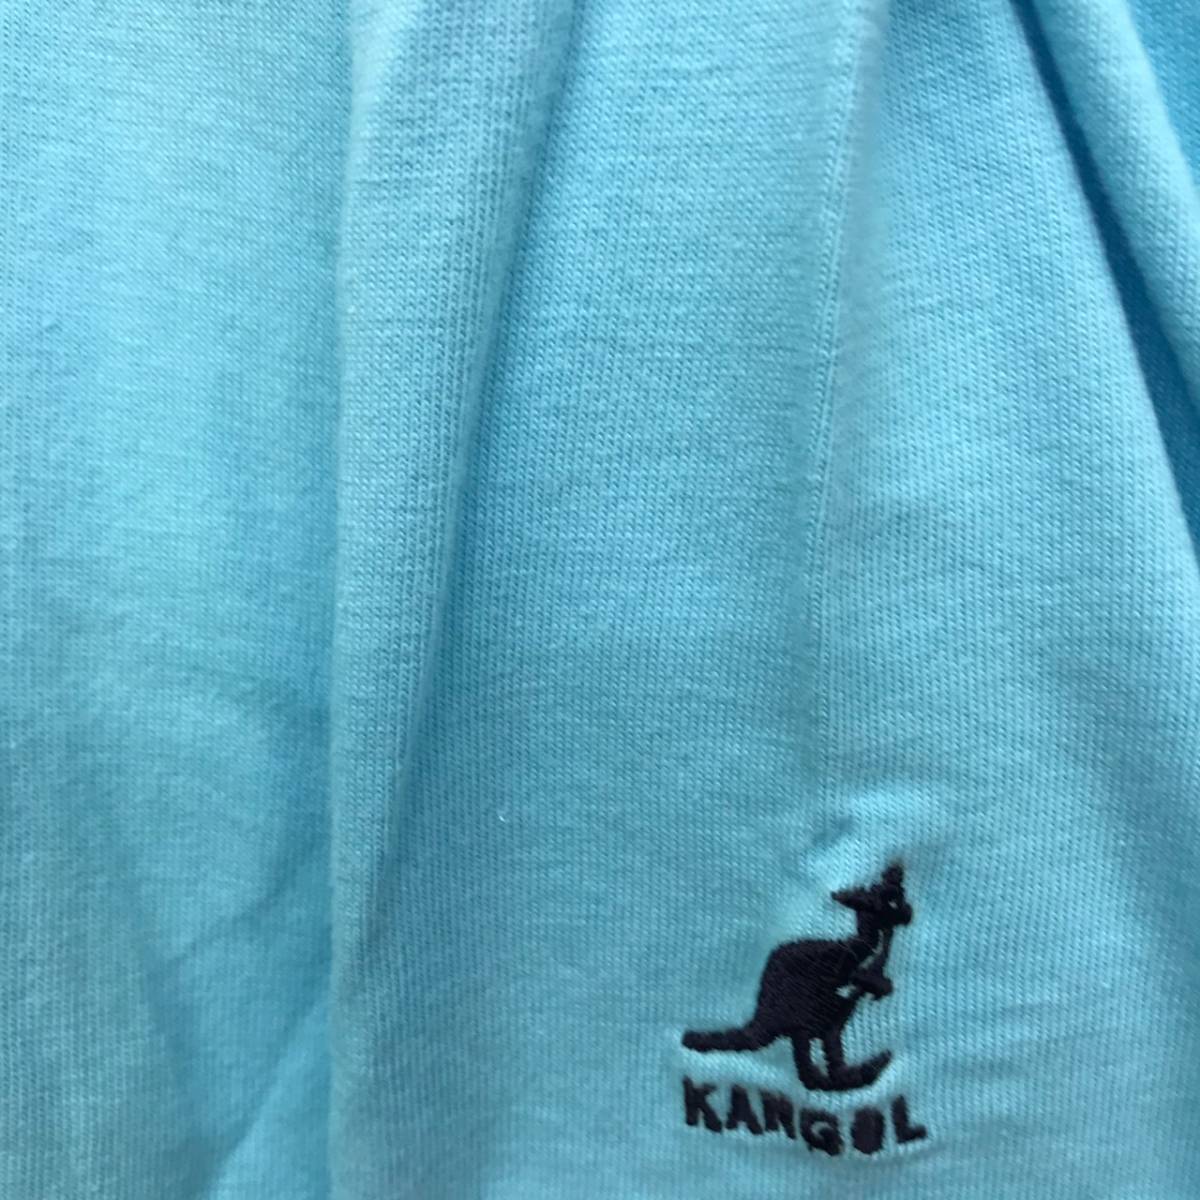 【刺繍ロゴ】KANGOL カンゴール ビッグロゴ 半袖Tシャツ Mサイズ ワンポイント